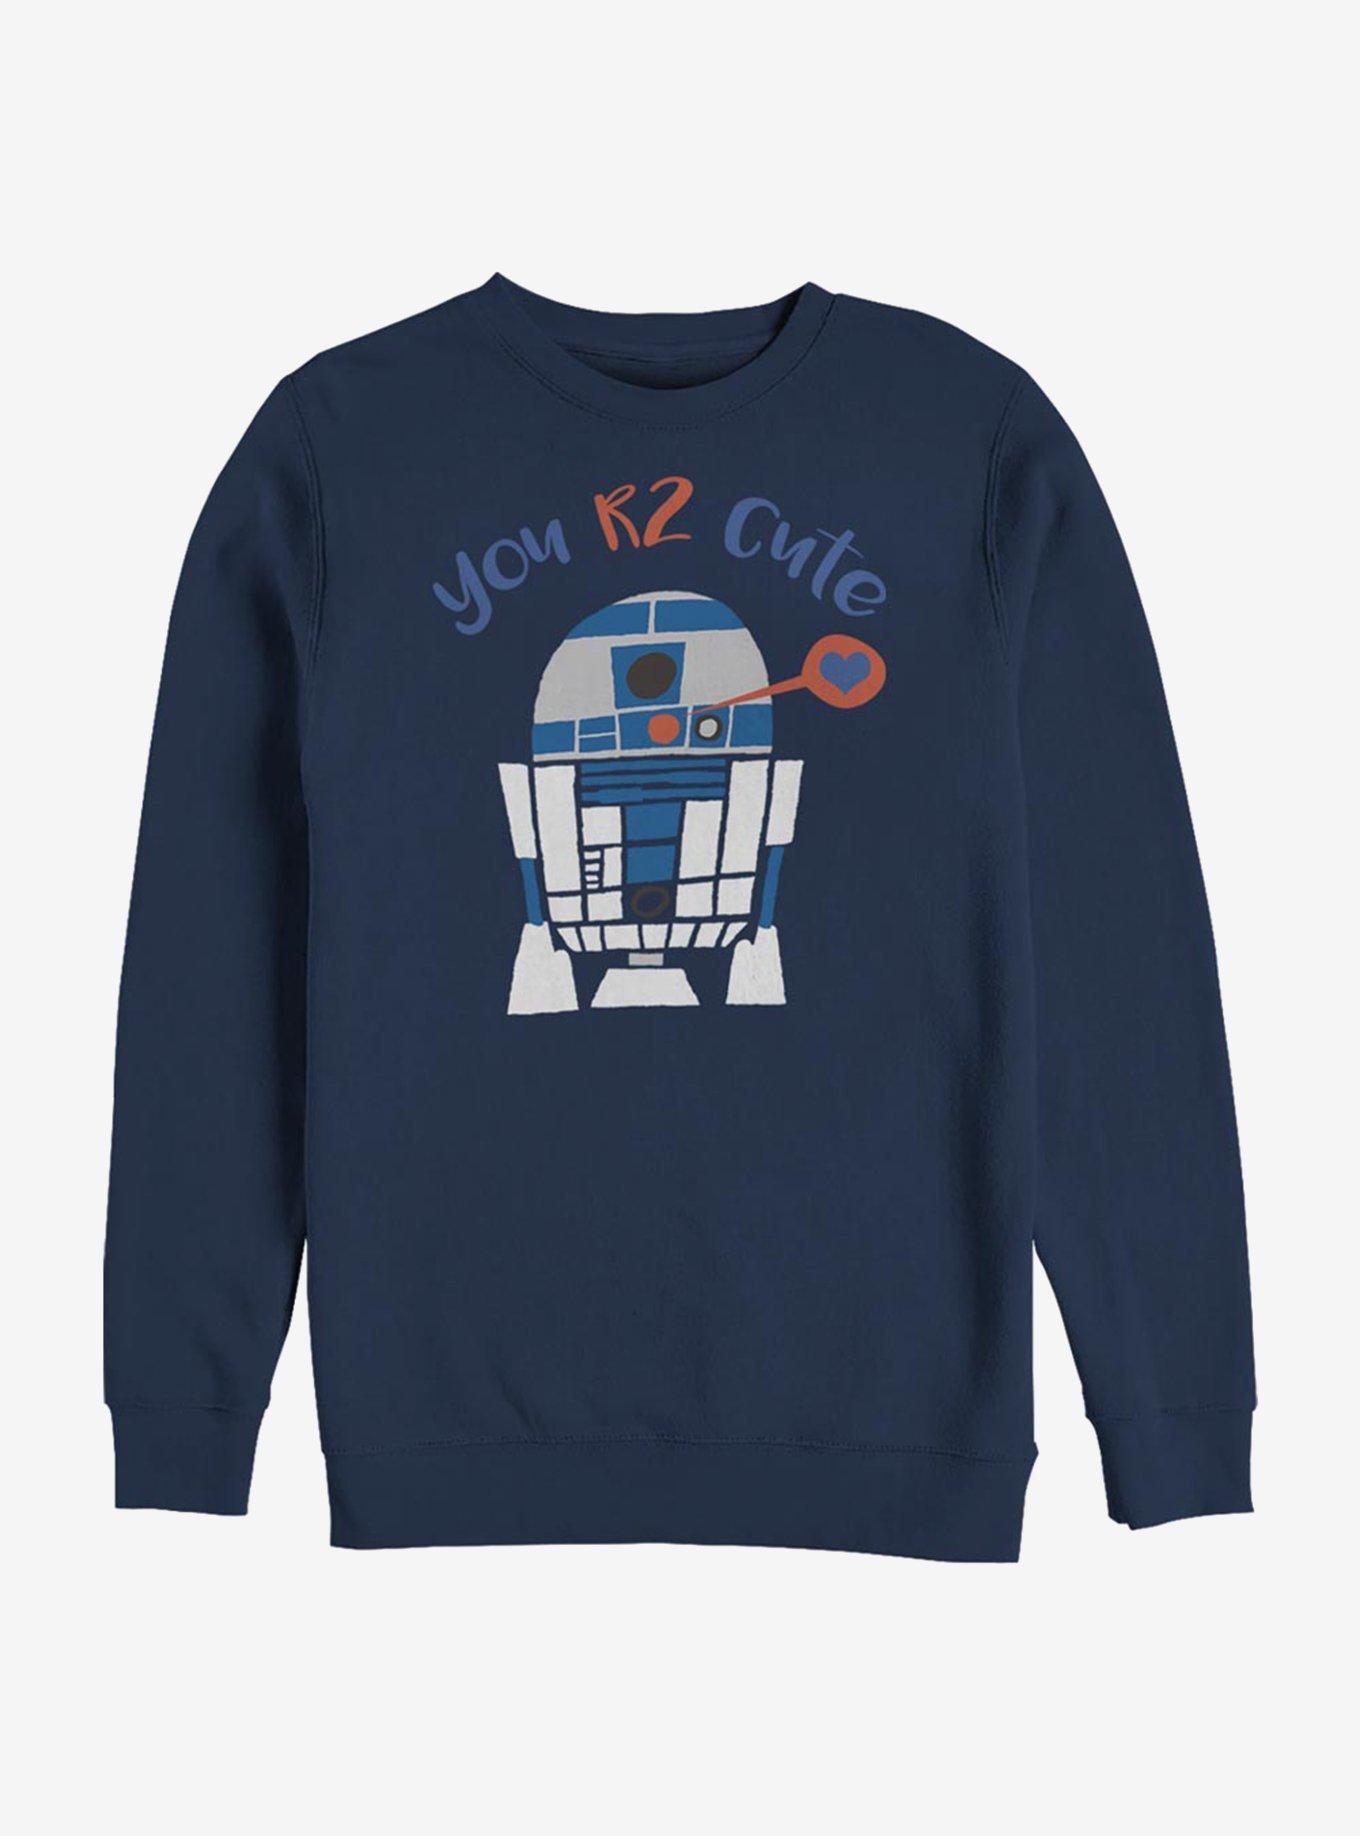 Star Wars You R2 Cute Crew Sweatshirt